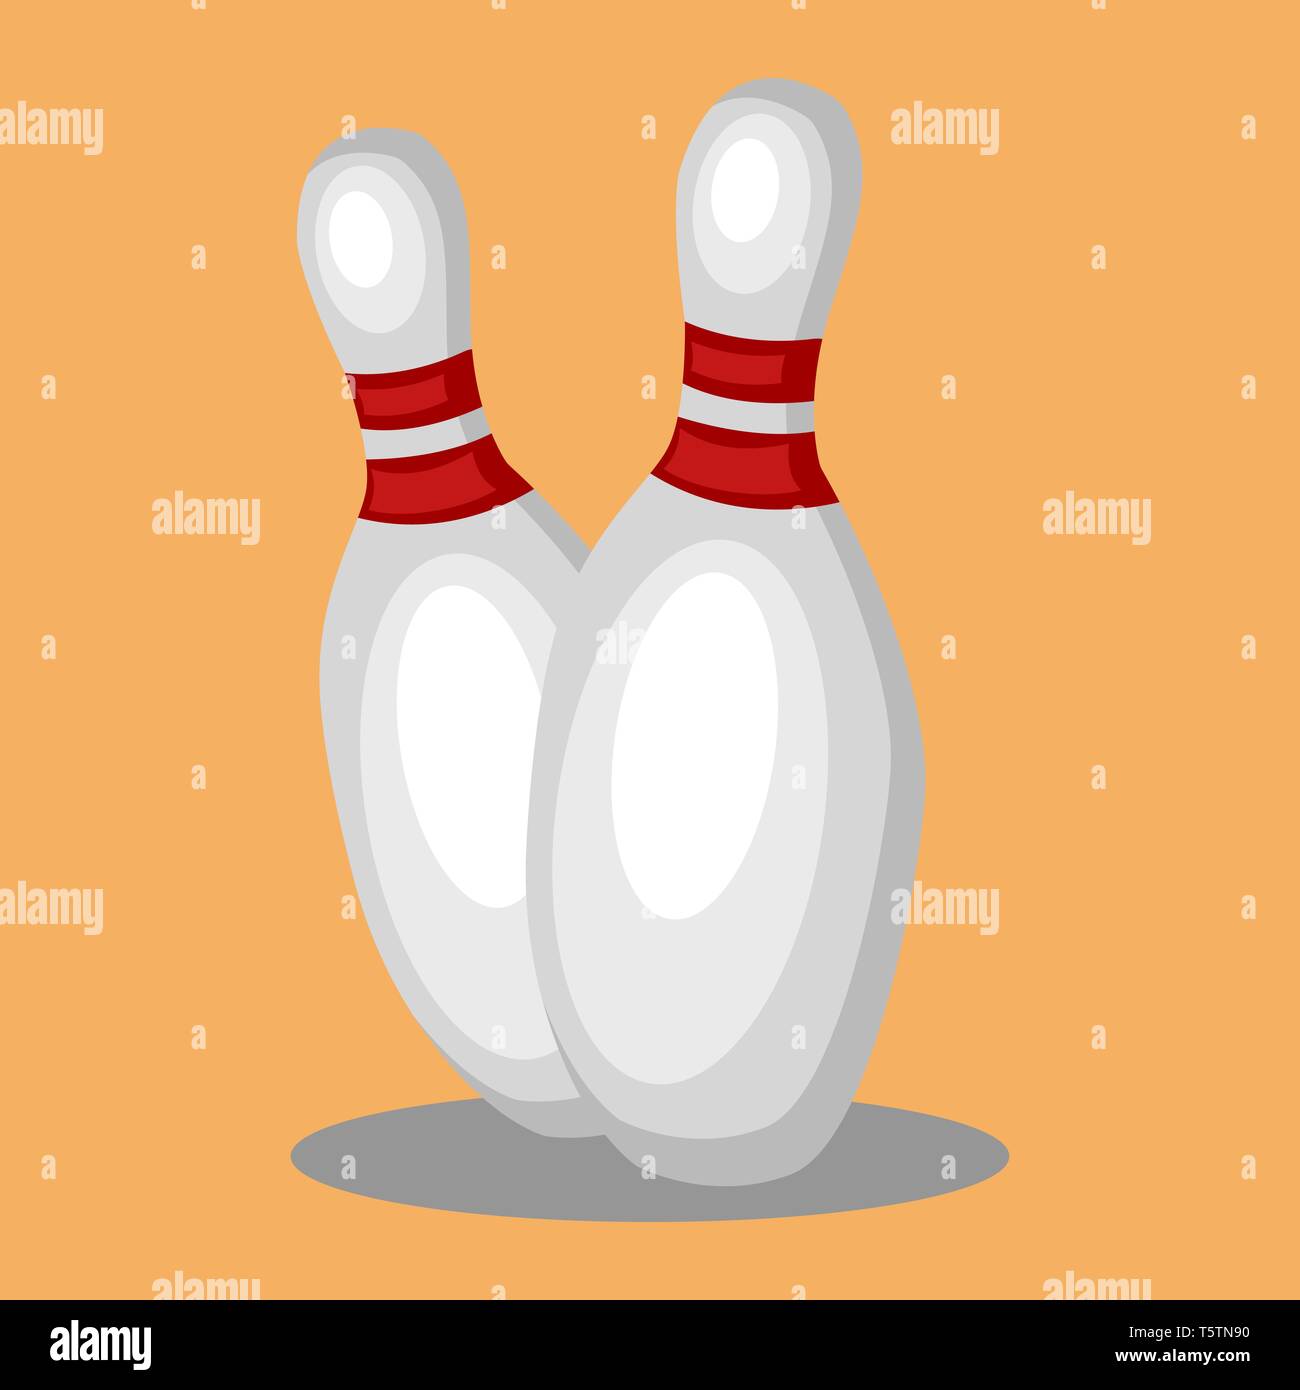 Zwei Bowling Pins in der Farbe Weiß mit roten Linien um den Hals in orange Hintergrund vector Farbe, Zeichnung oder Abbildung. Stock Vektor